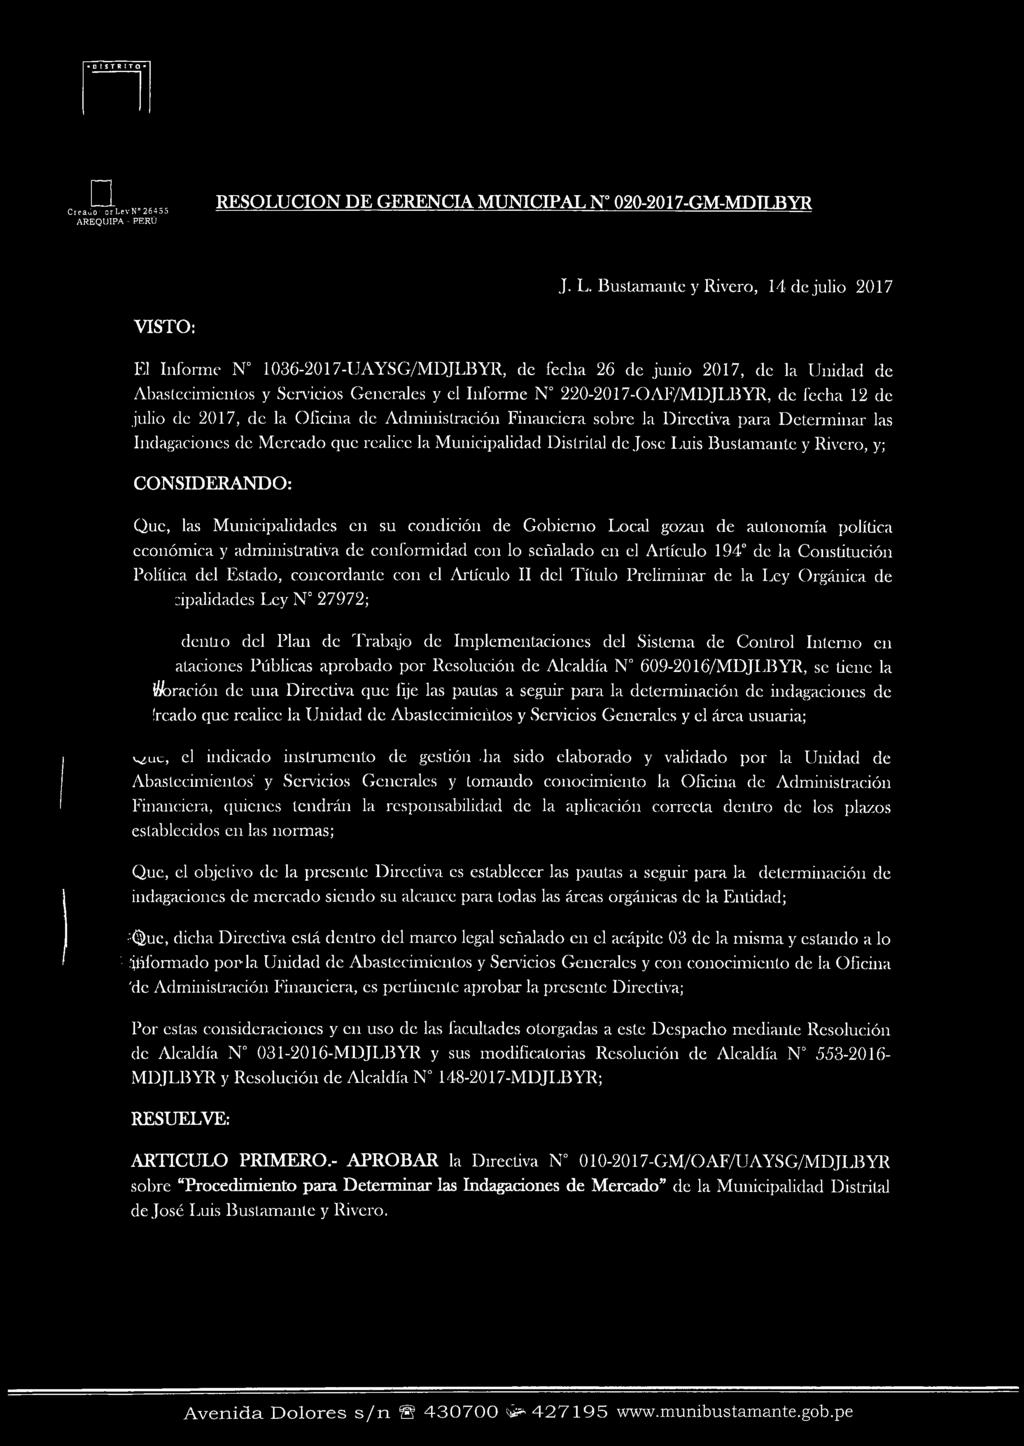 Bustamante y Rivero, 14 de julio 2017 El Informe N 1036-2017-UAYSG/MDJLBYR, de fecha 26 de junio 2017, de la Unidad de Abastecimientos y Servicios Generales y el Informe N 220-2017-0AF/MDJLBYR, de